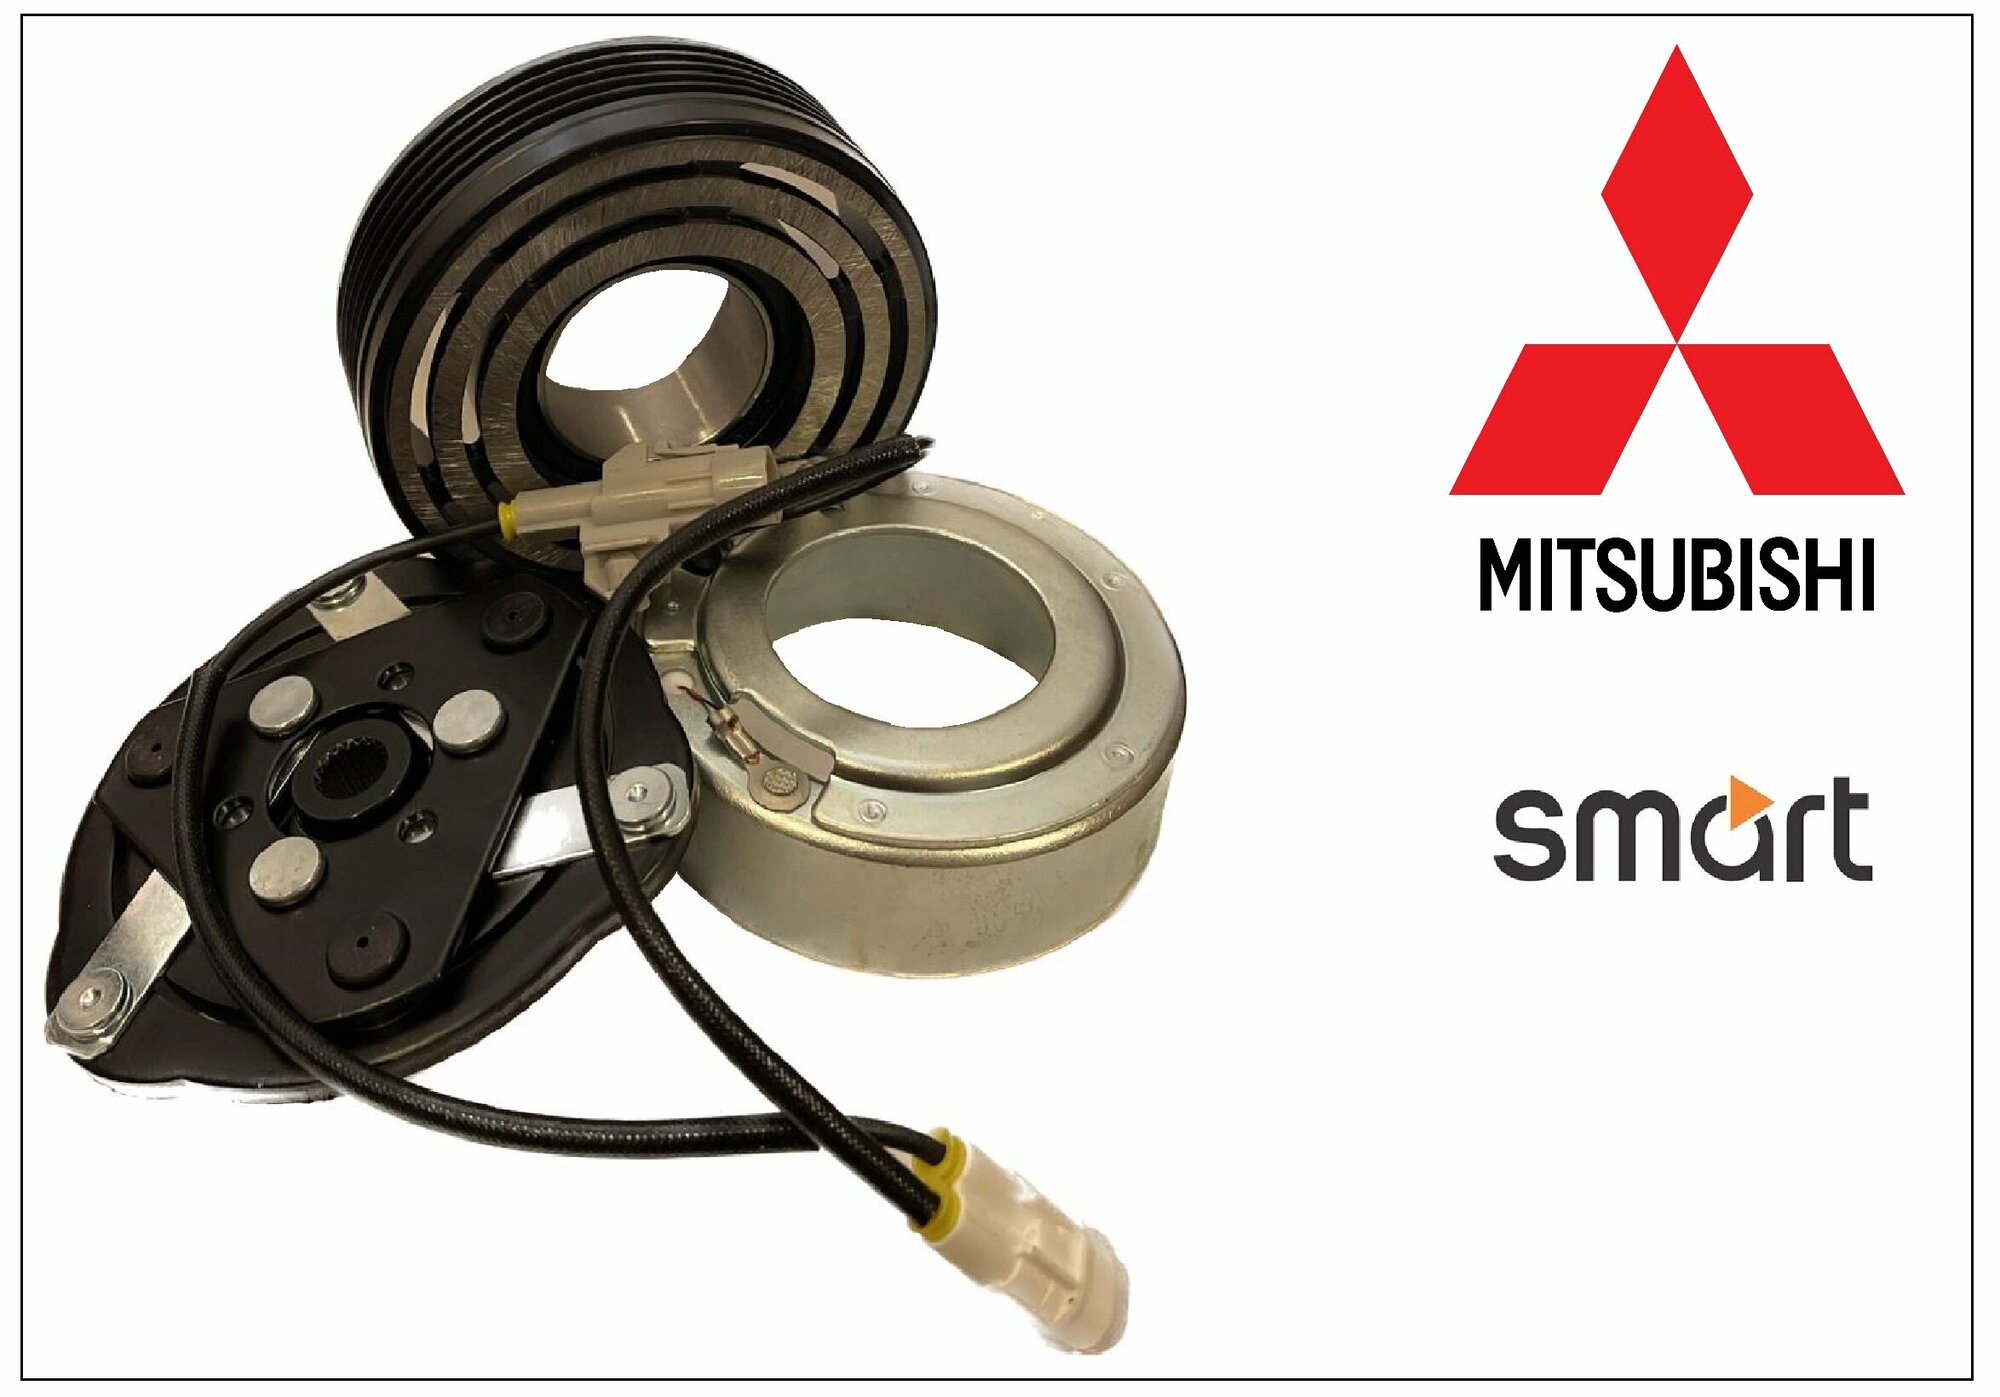 Муфта кондиционера Mitsubishi Colt Smart MSC60CA